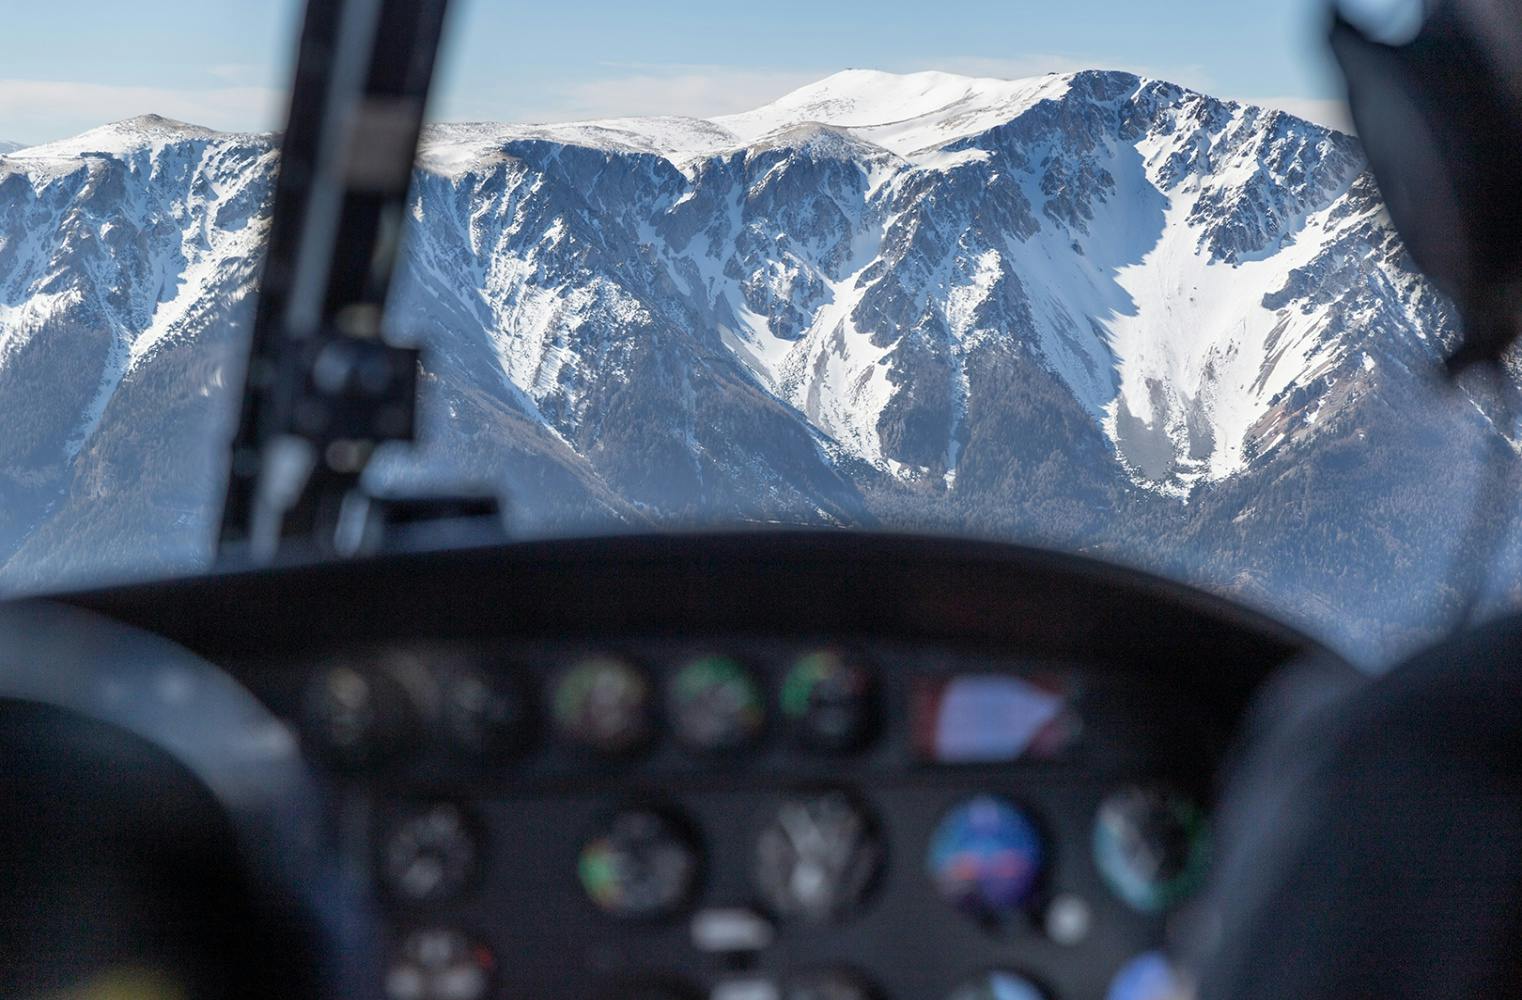 Hubschrauberflug | Rundflug über die Alpen | 40 Min